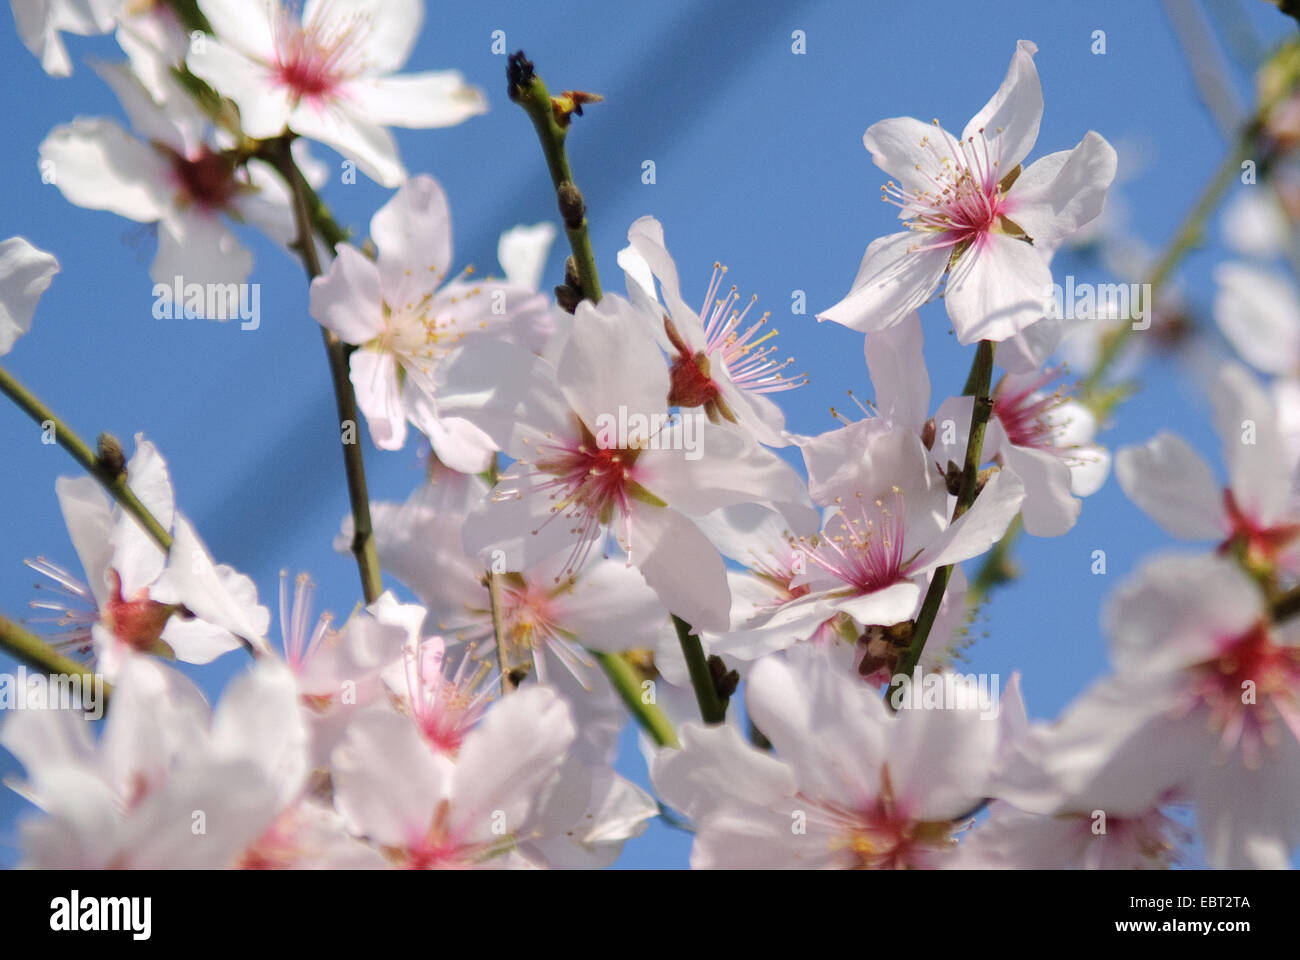 Almond (Prunus dulcis), flowers Stock Photo